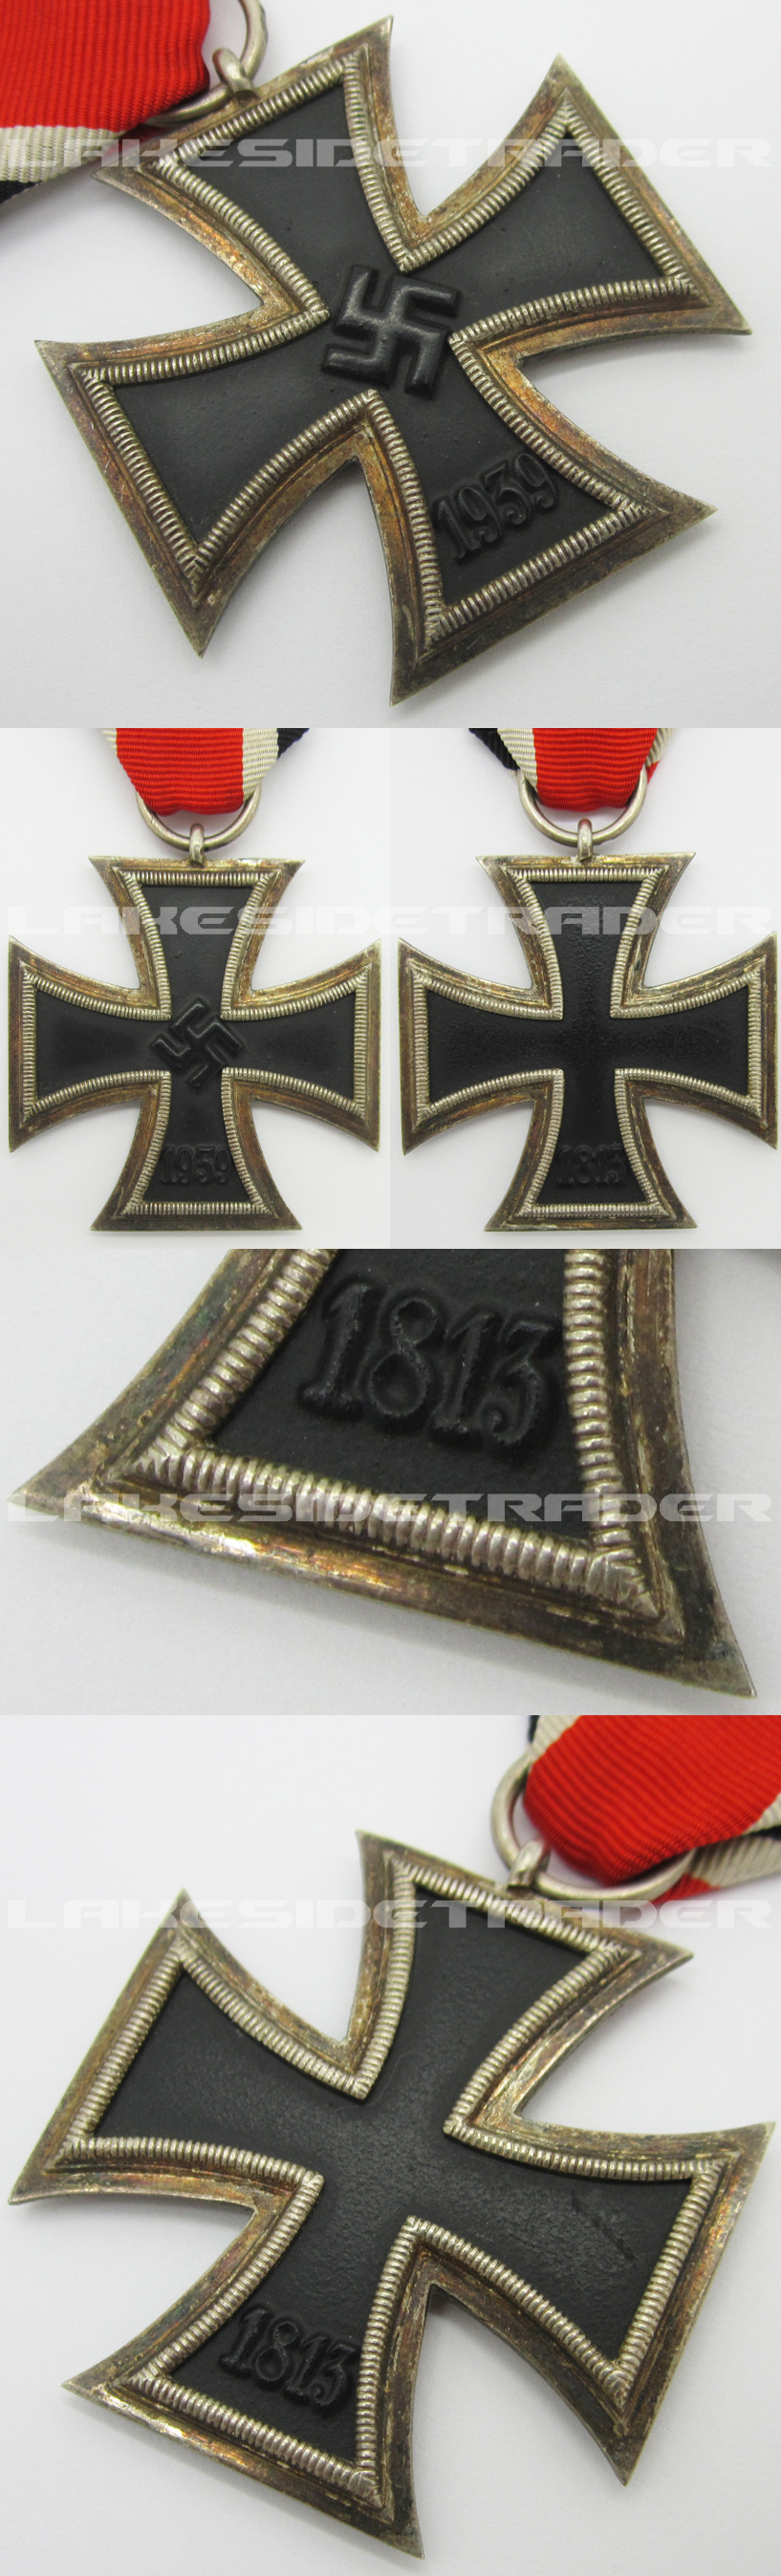 2nd Class Iron Cross - 